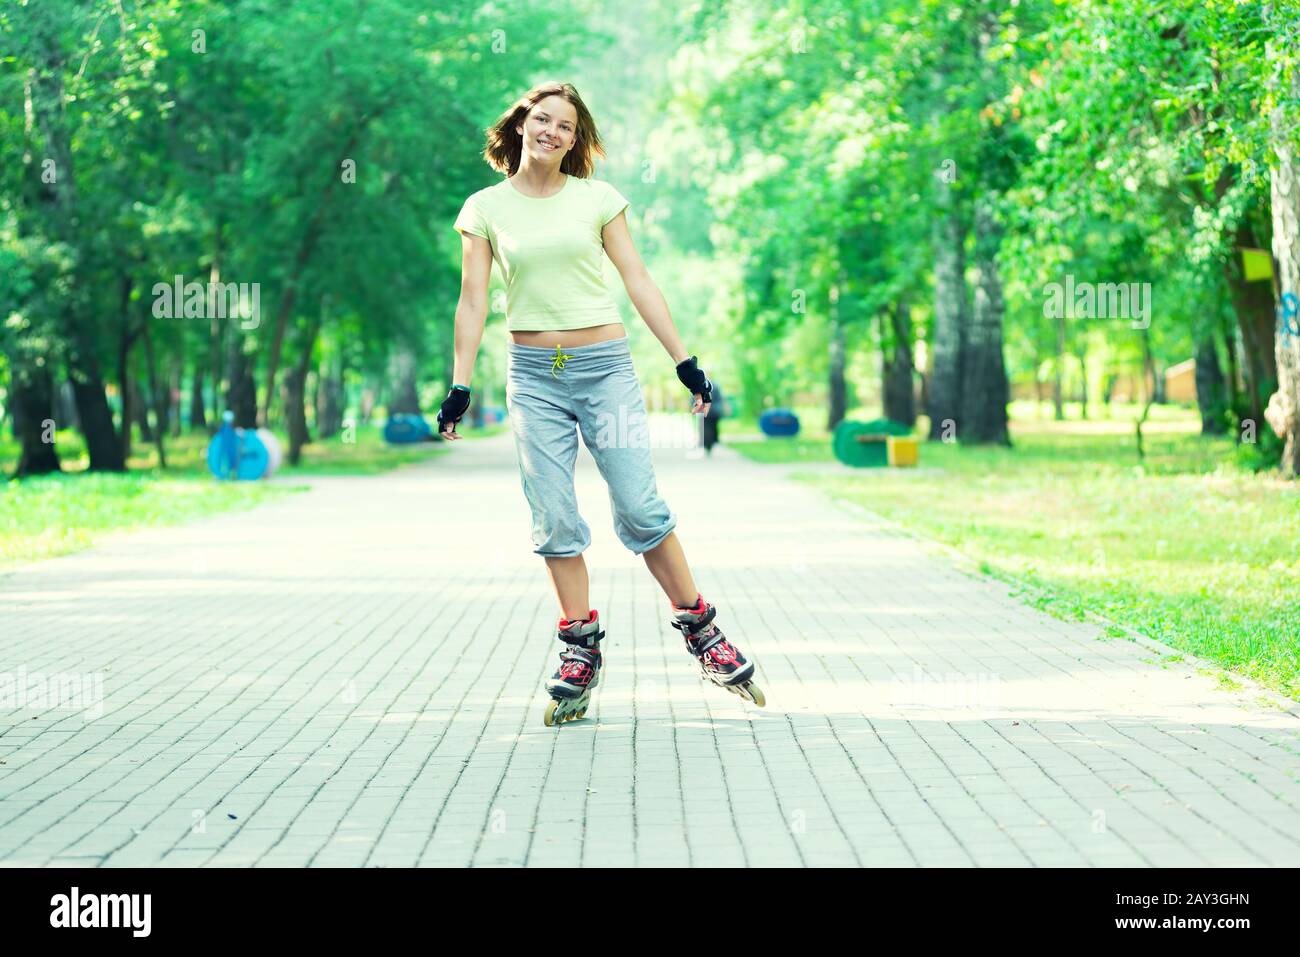 Patinar en el parque deportivo de chica patinar sobre patines en línea Foto de stock